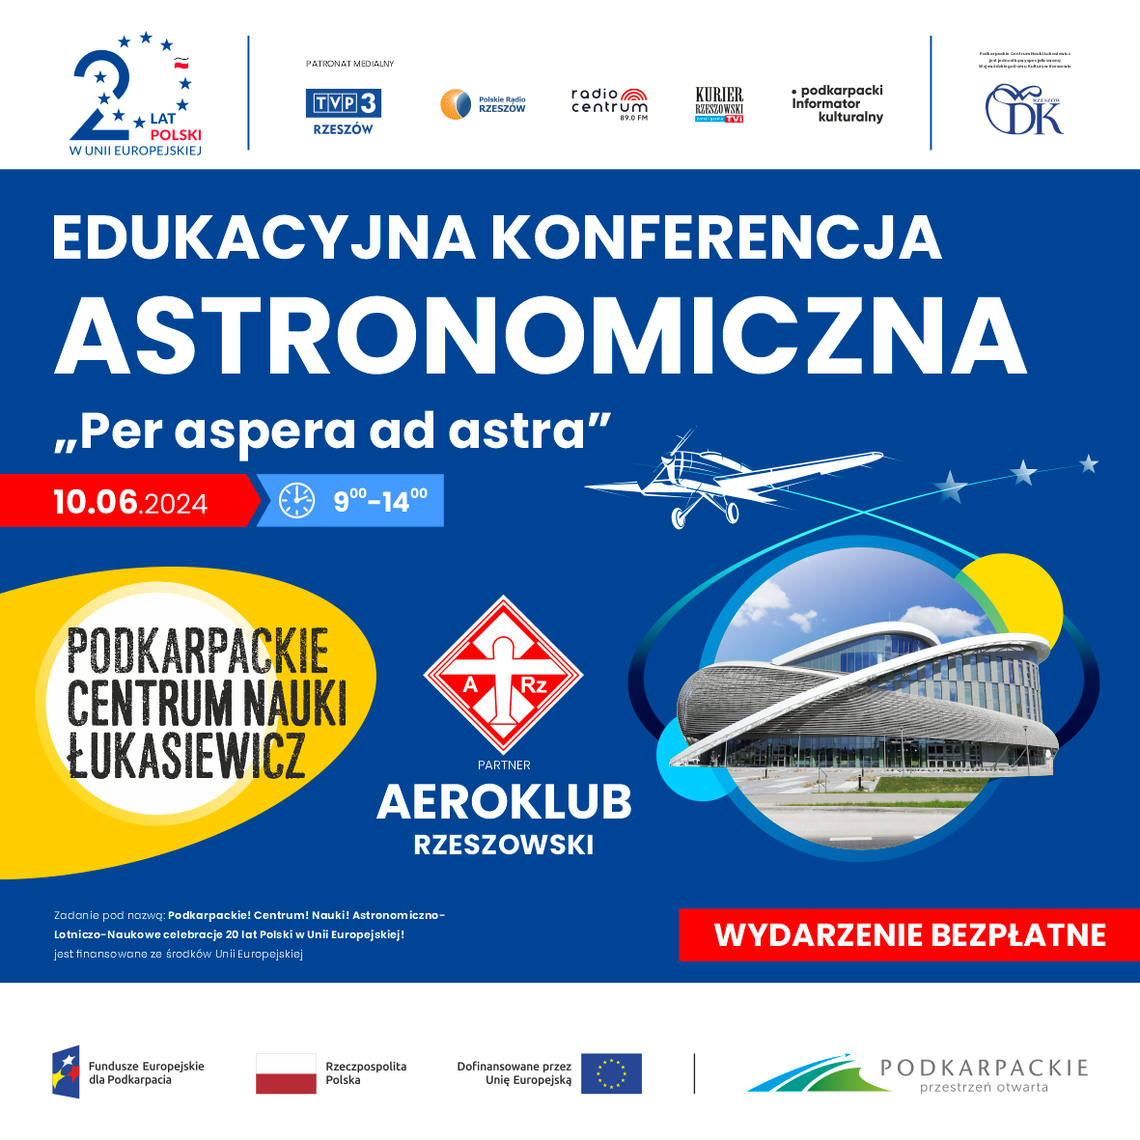 Podkarpackie Centrum Nauki Łukasiewicz: Konferencja astronomiczna i pokazy naukowe